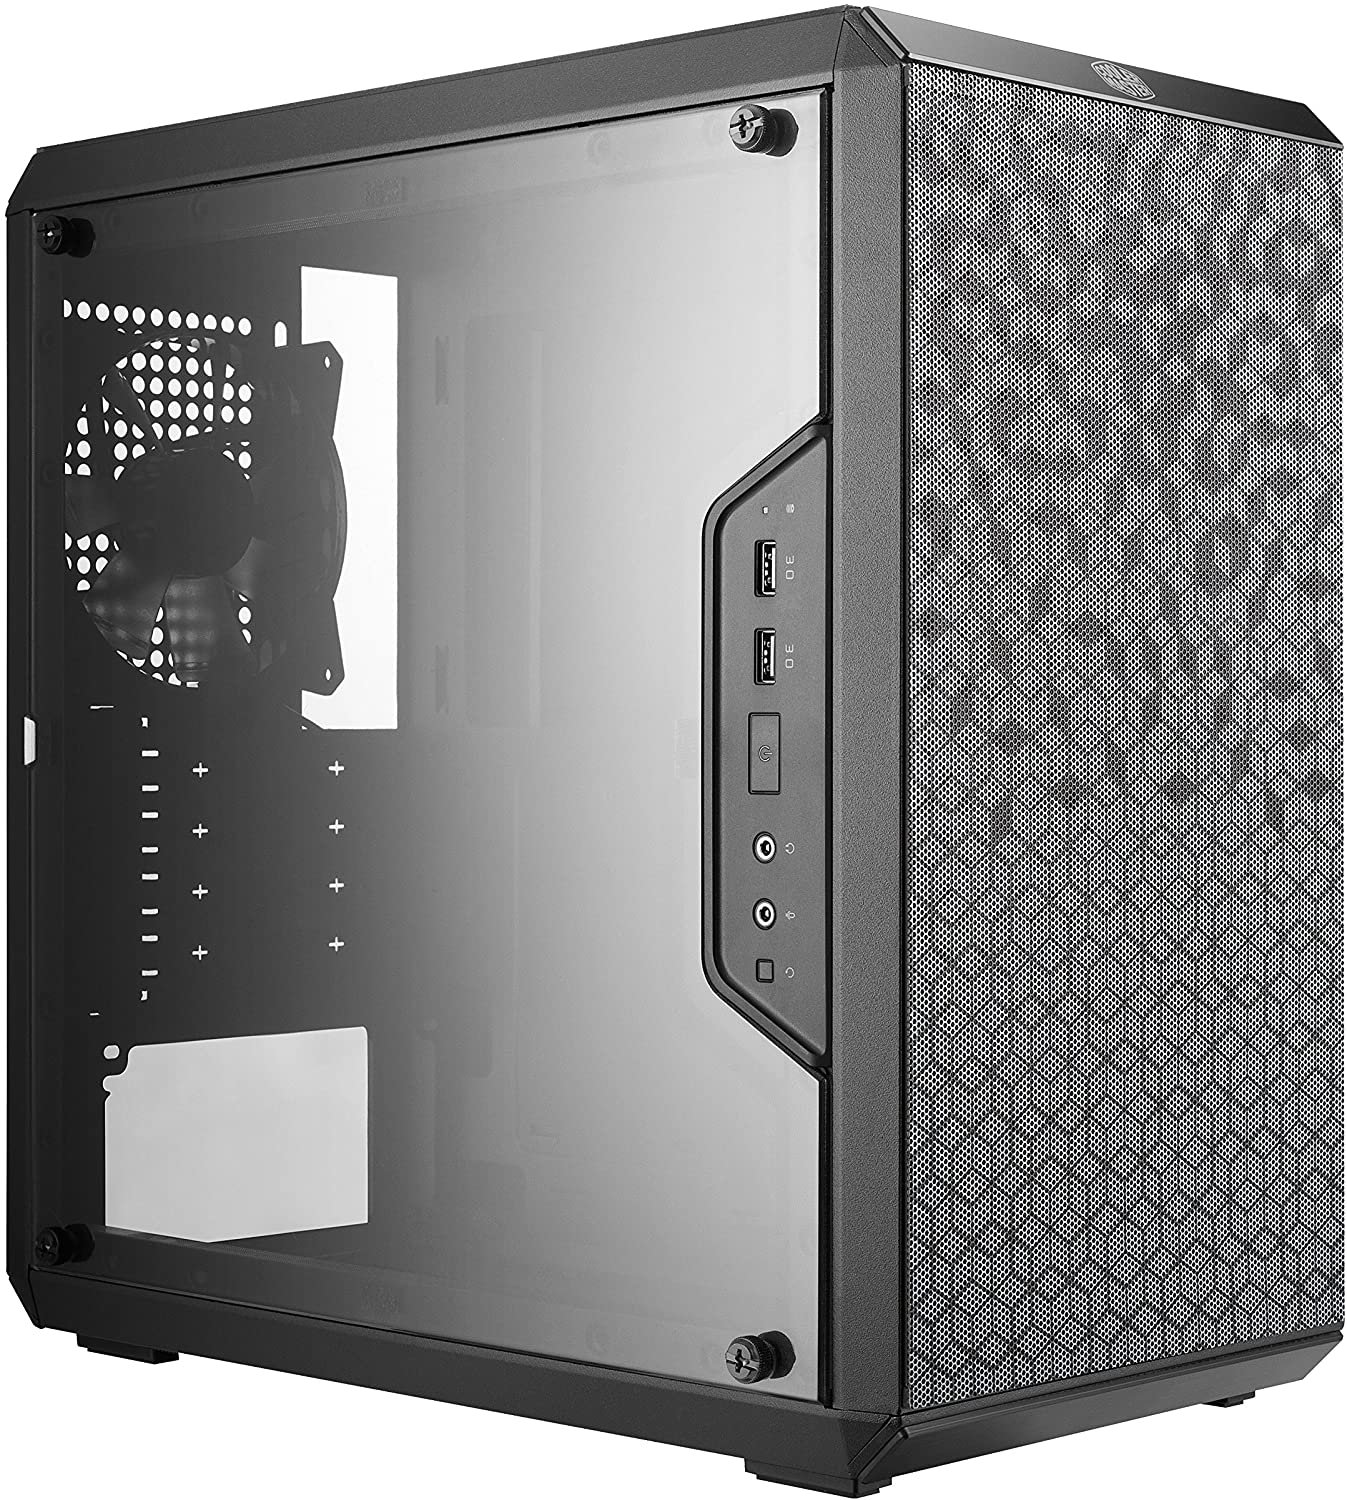 8 Case - Best $700 PC Build 2021